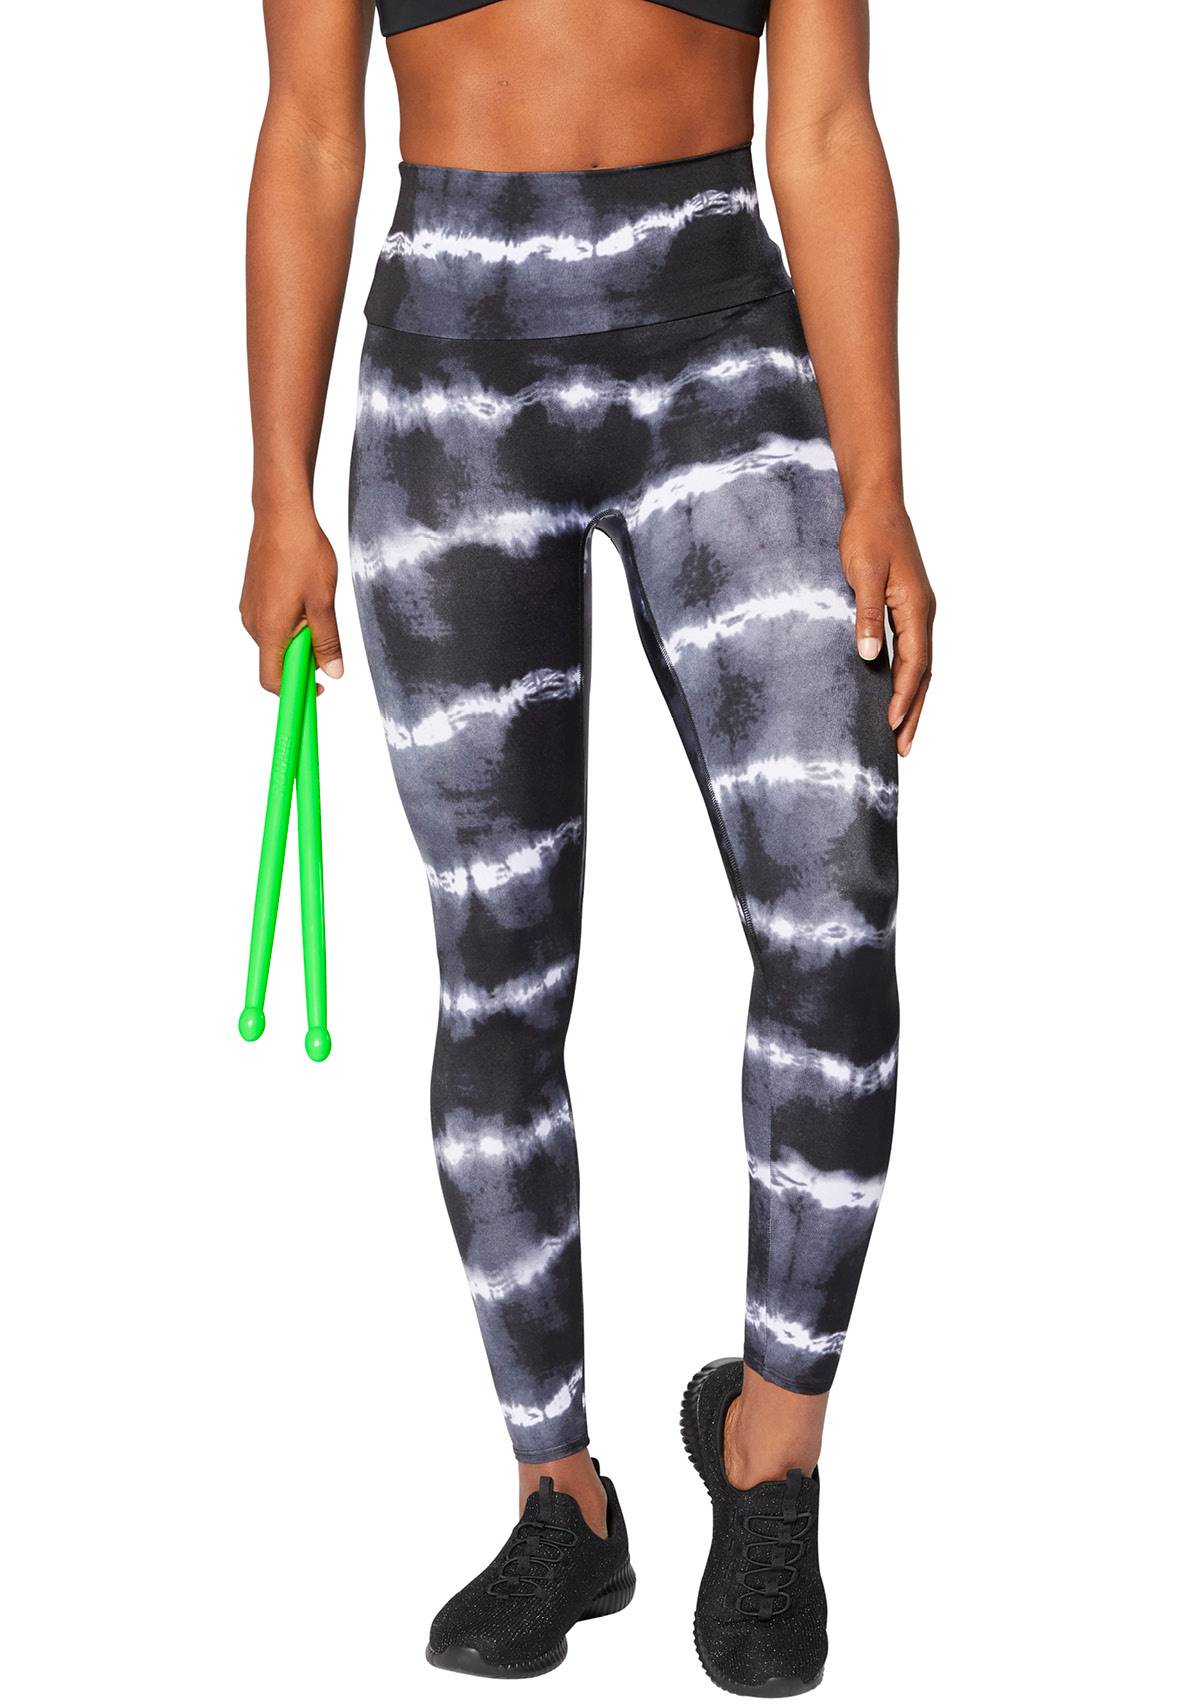 K-Deer Tie Dye Legging • Shop - POUND: Rockout. Workout.®